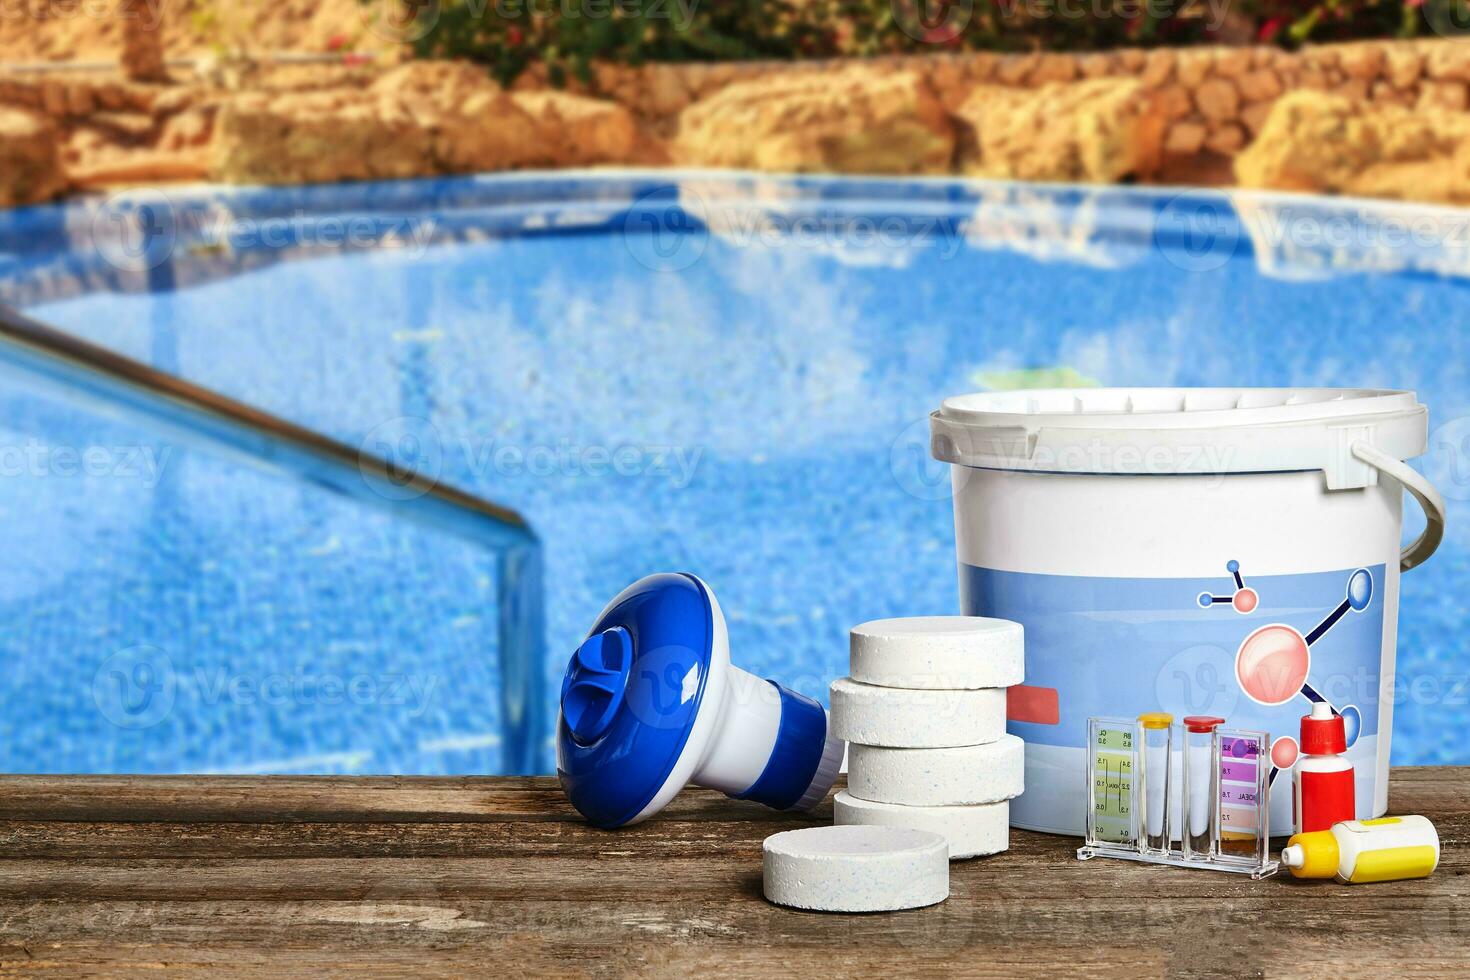 equipamento com químico limpeza produtos e Ferramentas para a manutenção do a natação piscina. foto